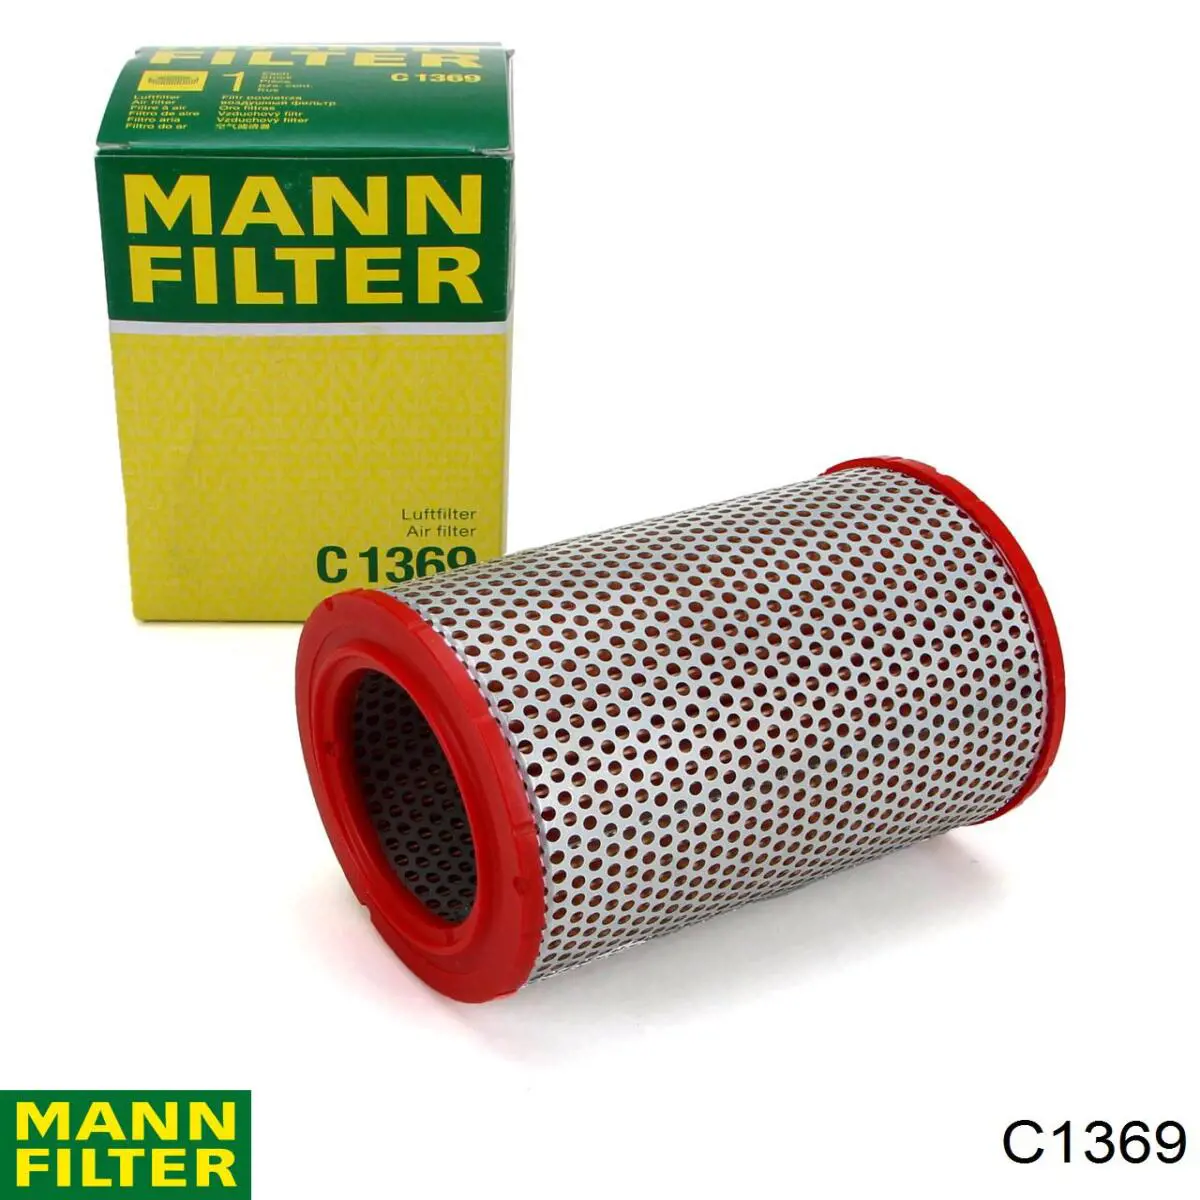 Filtro de aire C1369 Mann-Filter